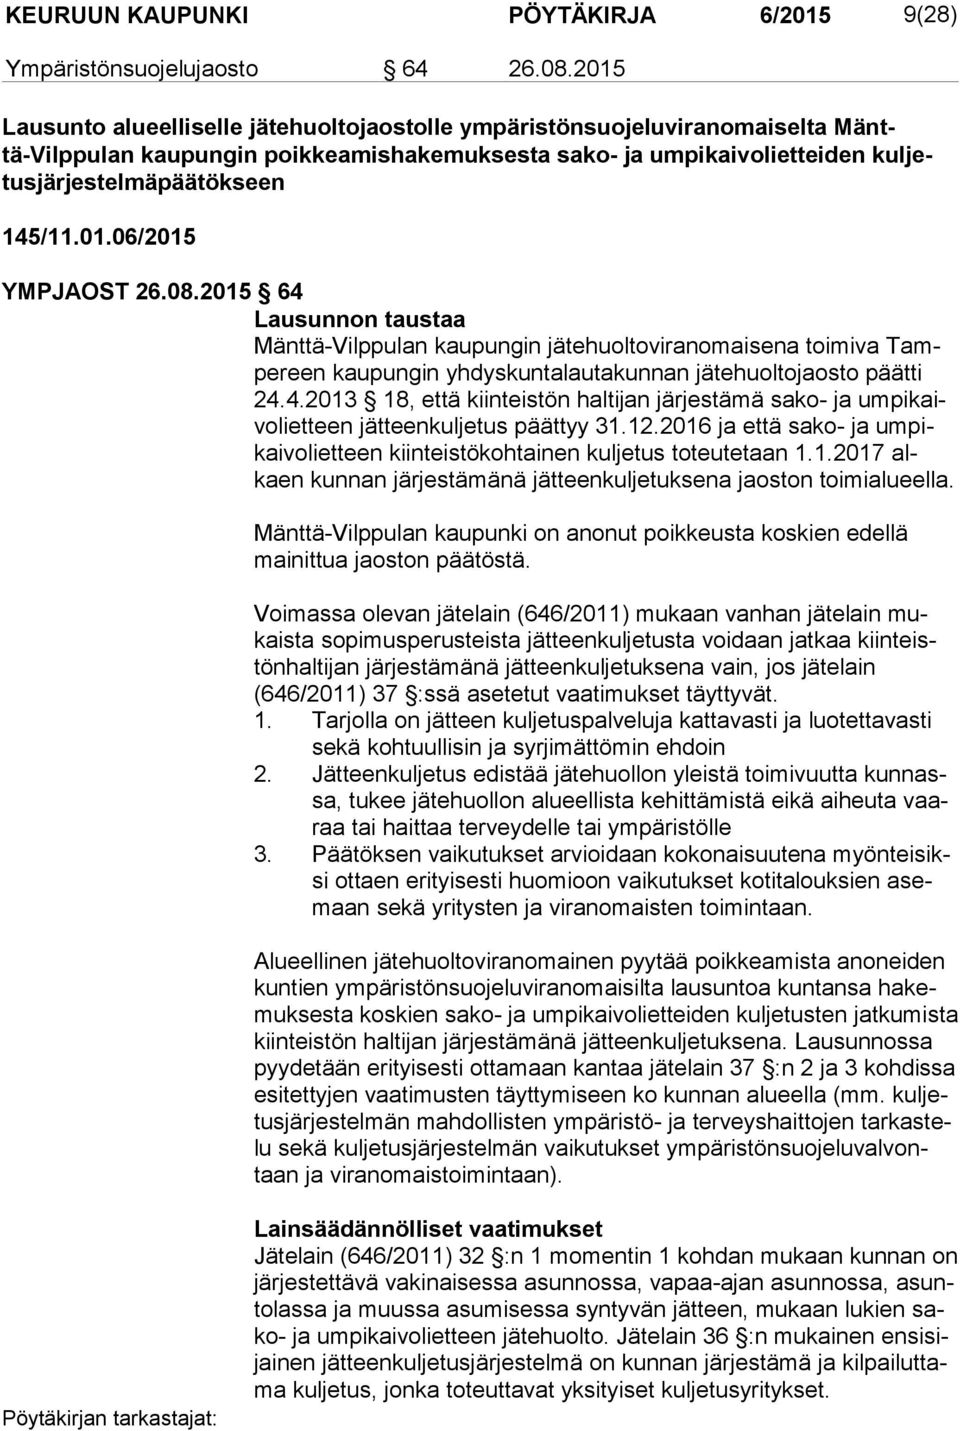 145/11.01.06/2015 YMPJAOST 26.08.2015 64 Lausunnon taustaa Mänttä-Vilppulan kaupungin jätehuoltoviranomaisena toimiva Tampe reen kaupungin yhdyskuntalautakunnan jätehuoltojaosto päätti 24.4.2013 18, että kiinteistön haltijan järjestämä sako- ja um pi kaivo liet teen jätteenkuljetus päättyy 31.